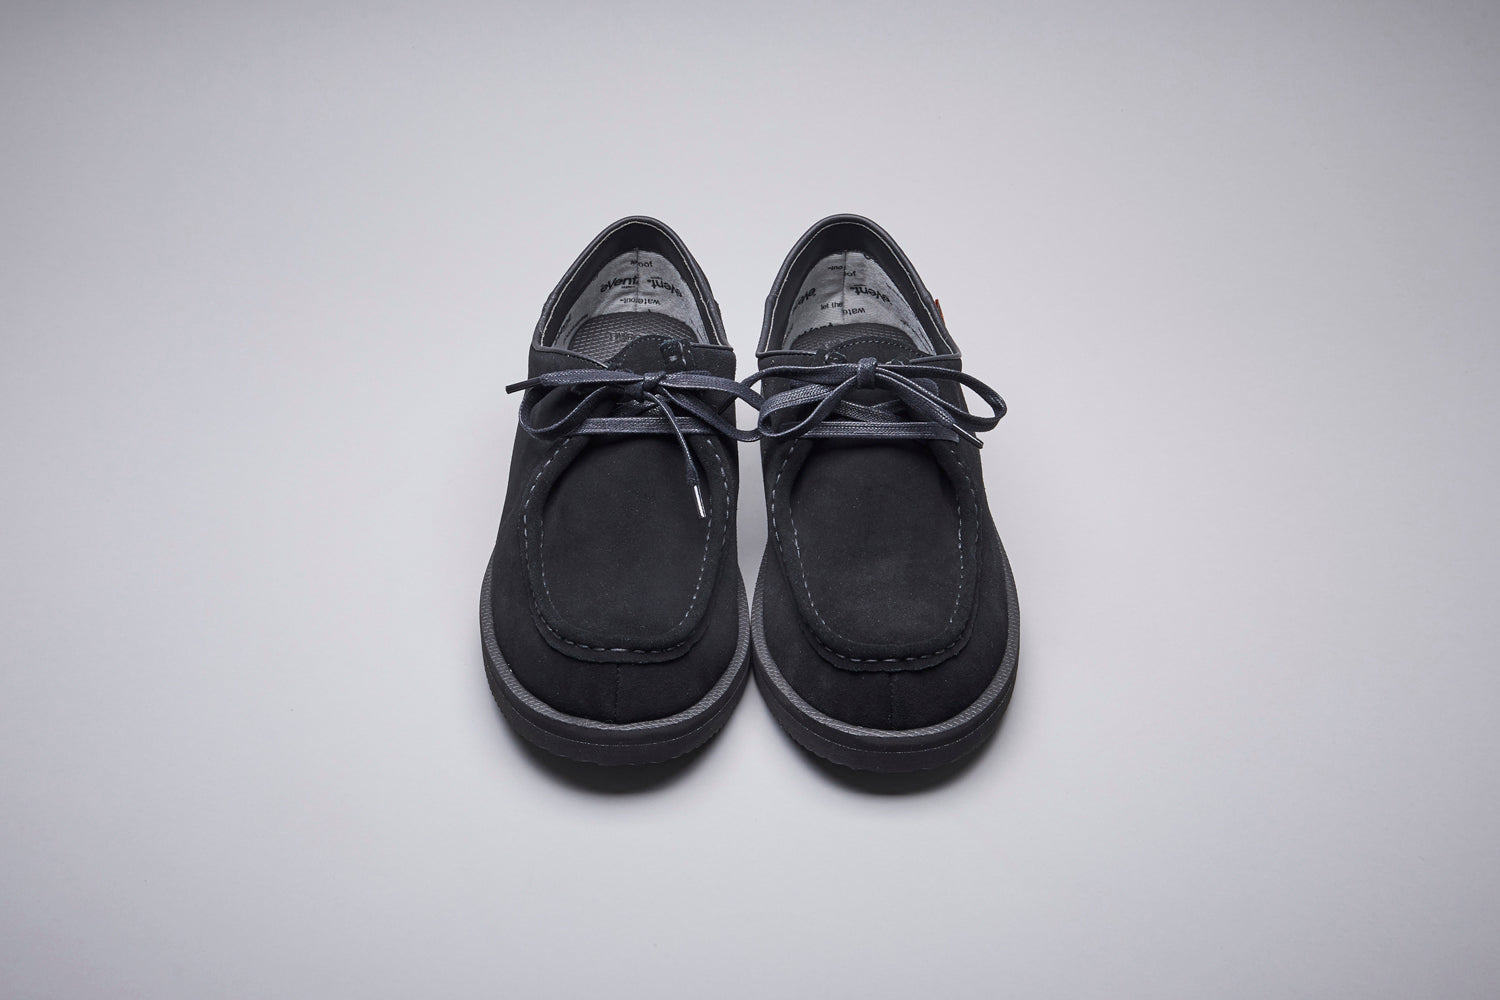 SUICOKE-Sandals-COC-SEVAB - Black-OG-253SEVABOfficial Webstore Spring 2021